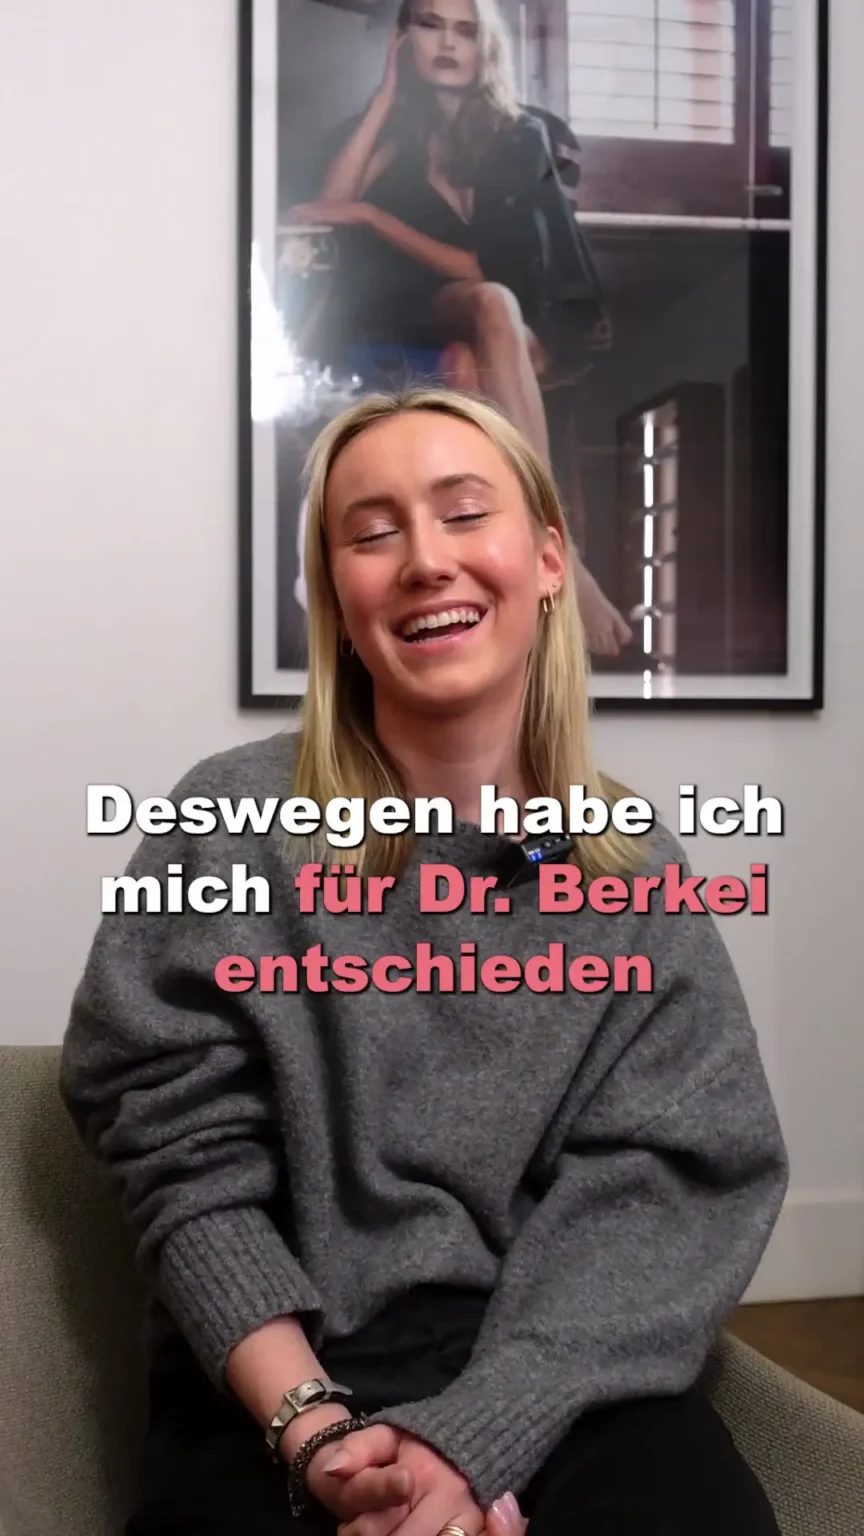 Aufnahme einer glücklichen Patientin mit dem Text "Deswegen heben ich mich für Dr. Berkei entschieden".